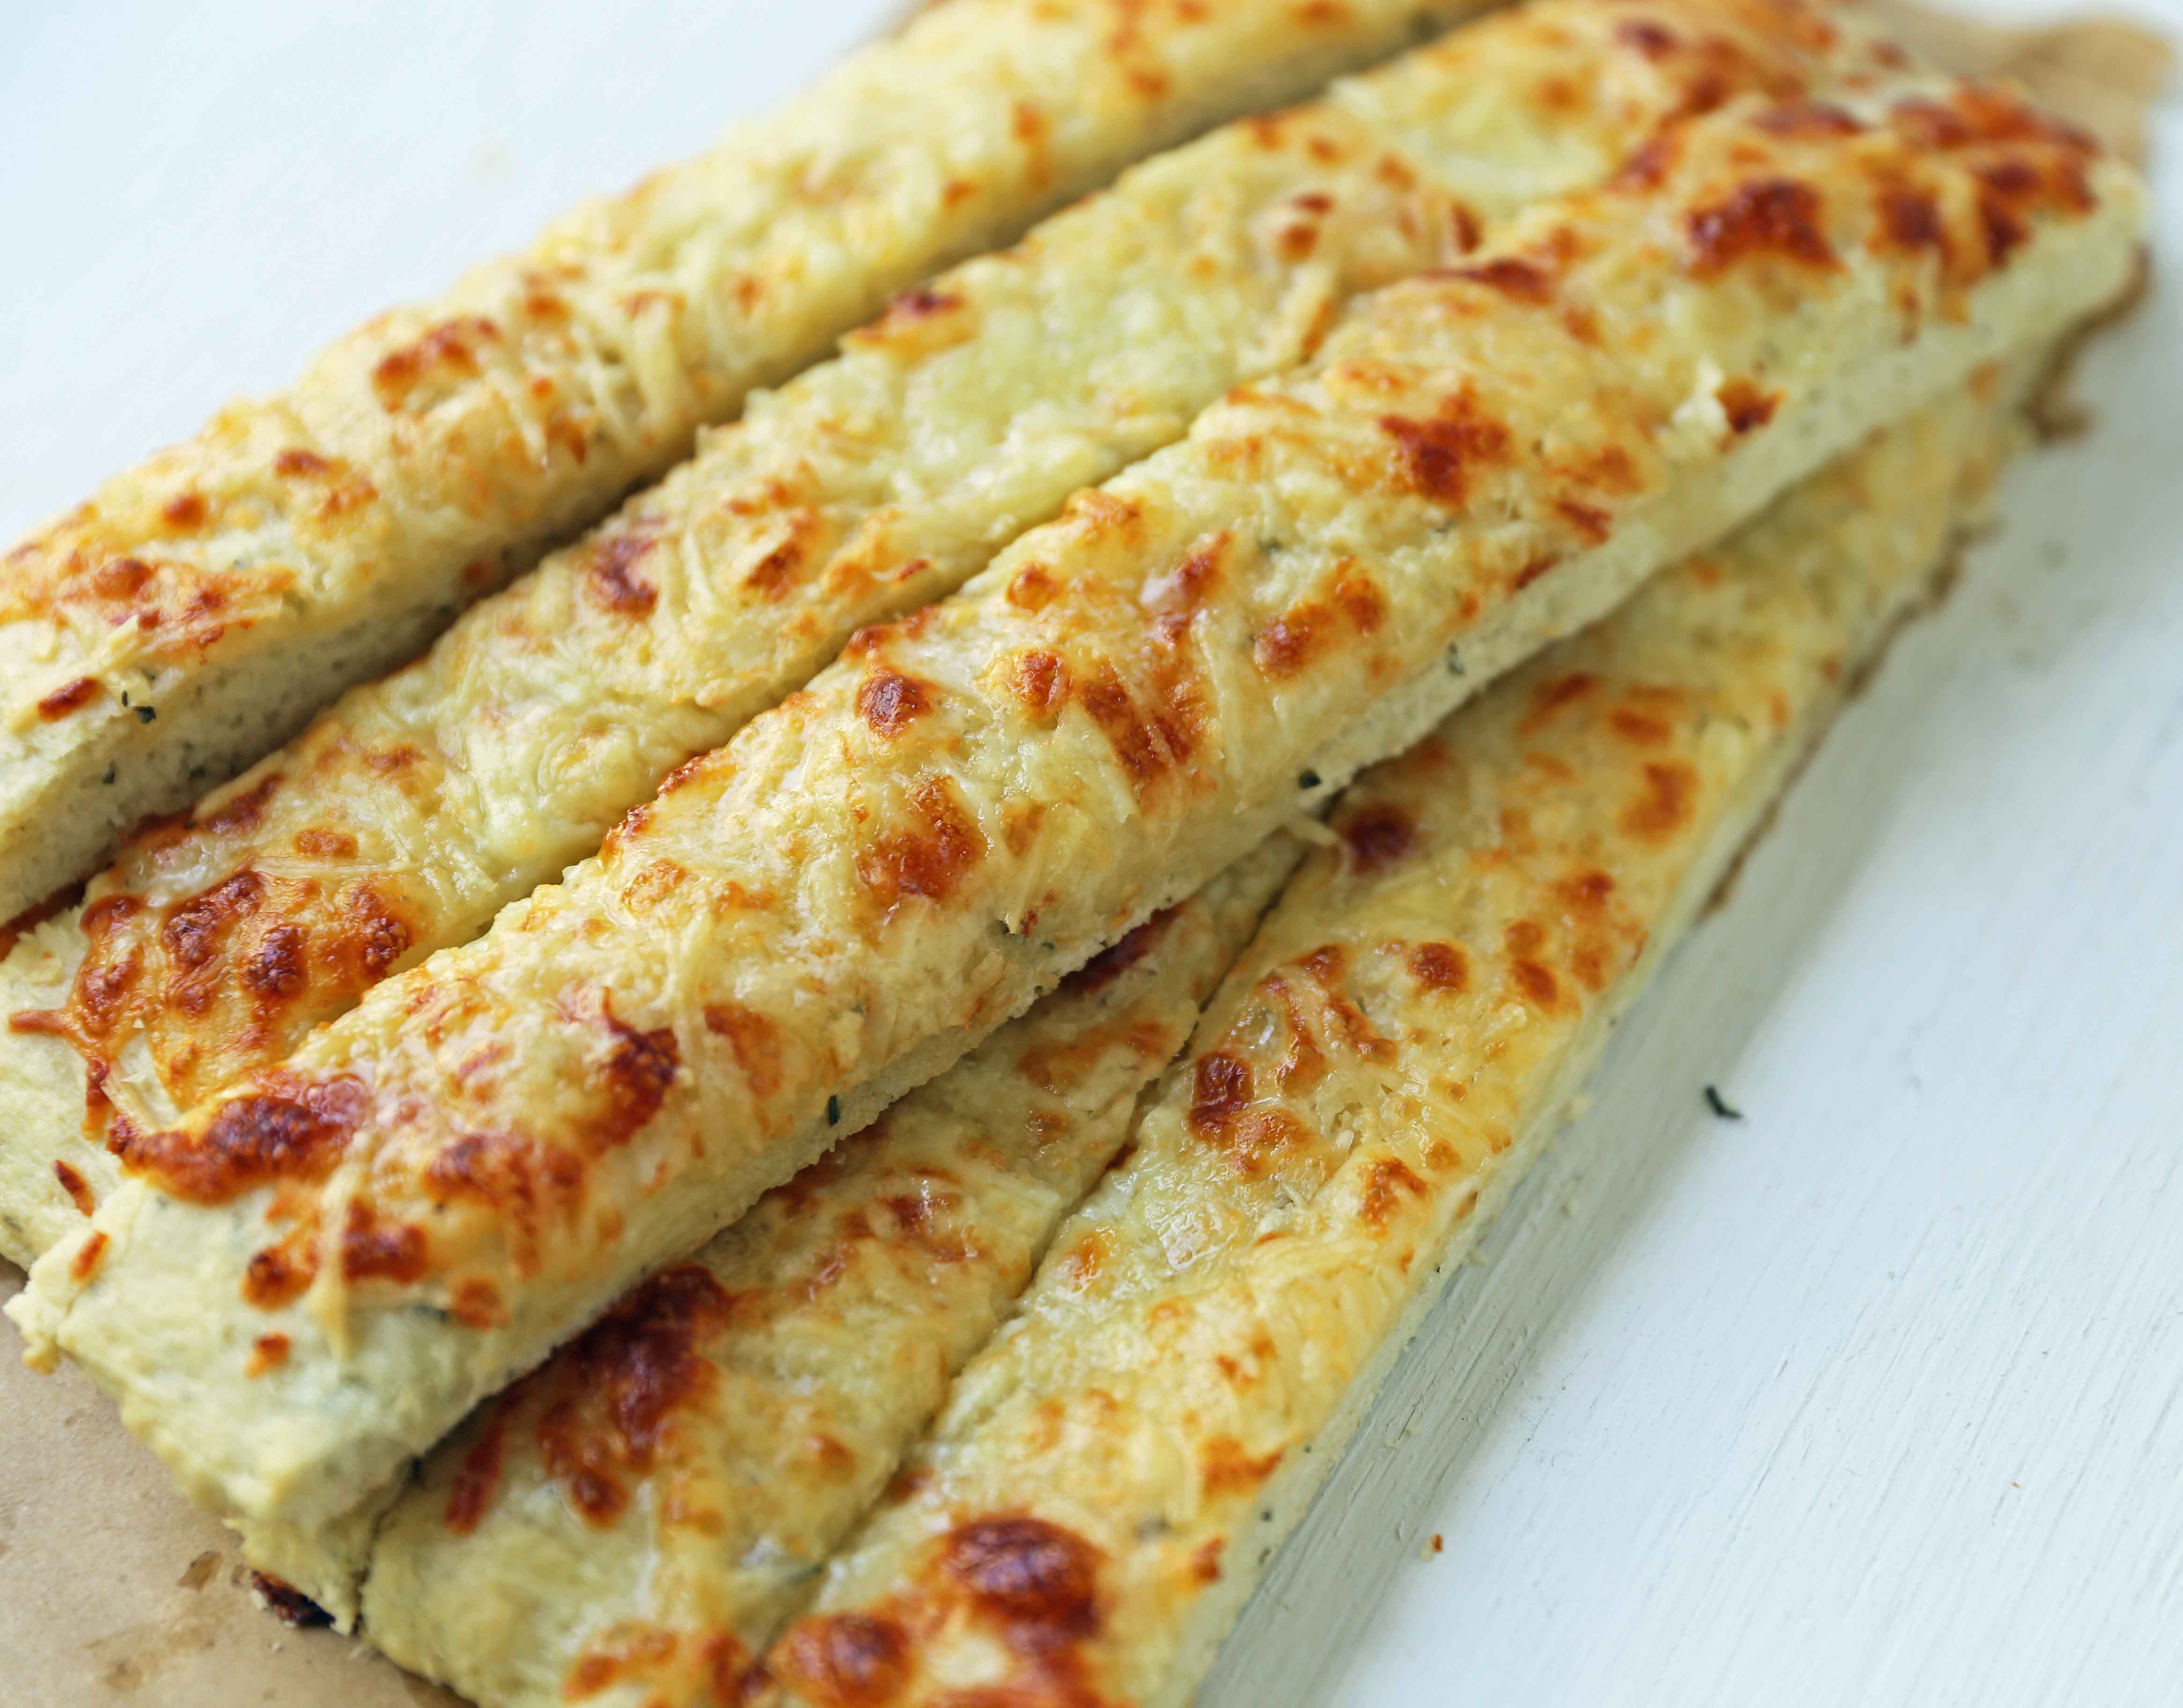  Ost Focaccia Brød Oppskrift. Hvordan lage hvitløk ost focaccia brød fra bunnen av. Den beste hvitløk ost breadsticks. www.moderhoney.com # focaccia